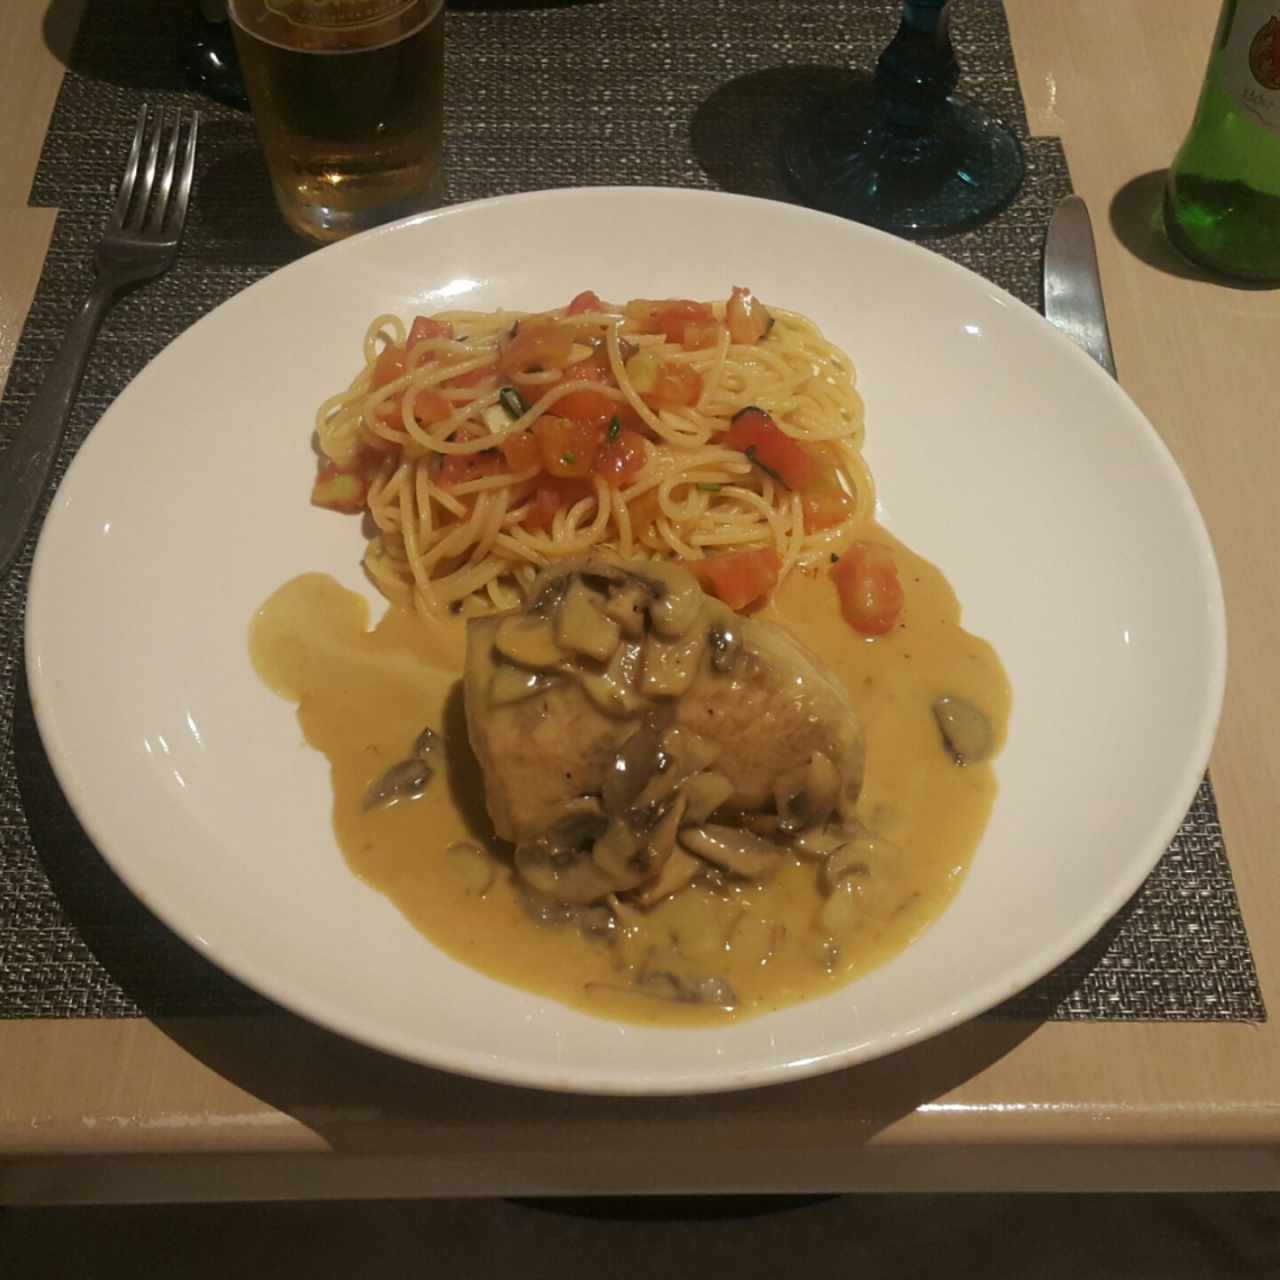 Tuna con champiñiones acompañado de espagueti aglie e olio